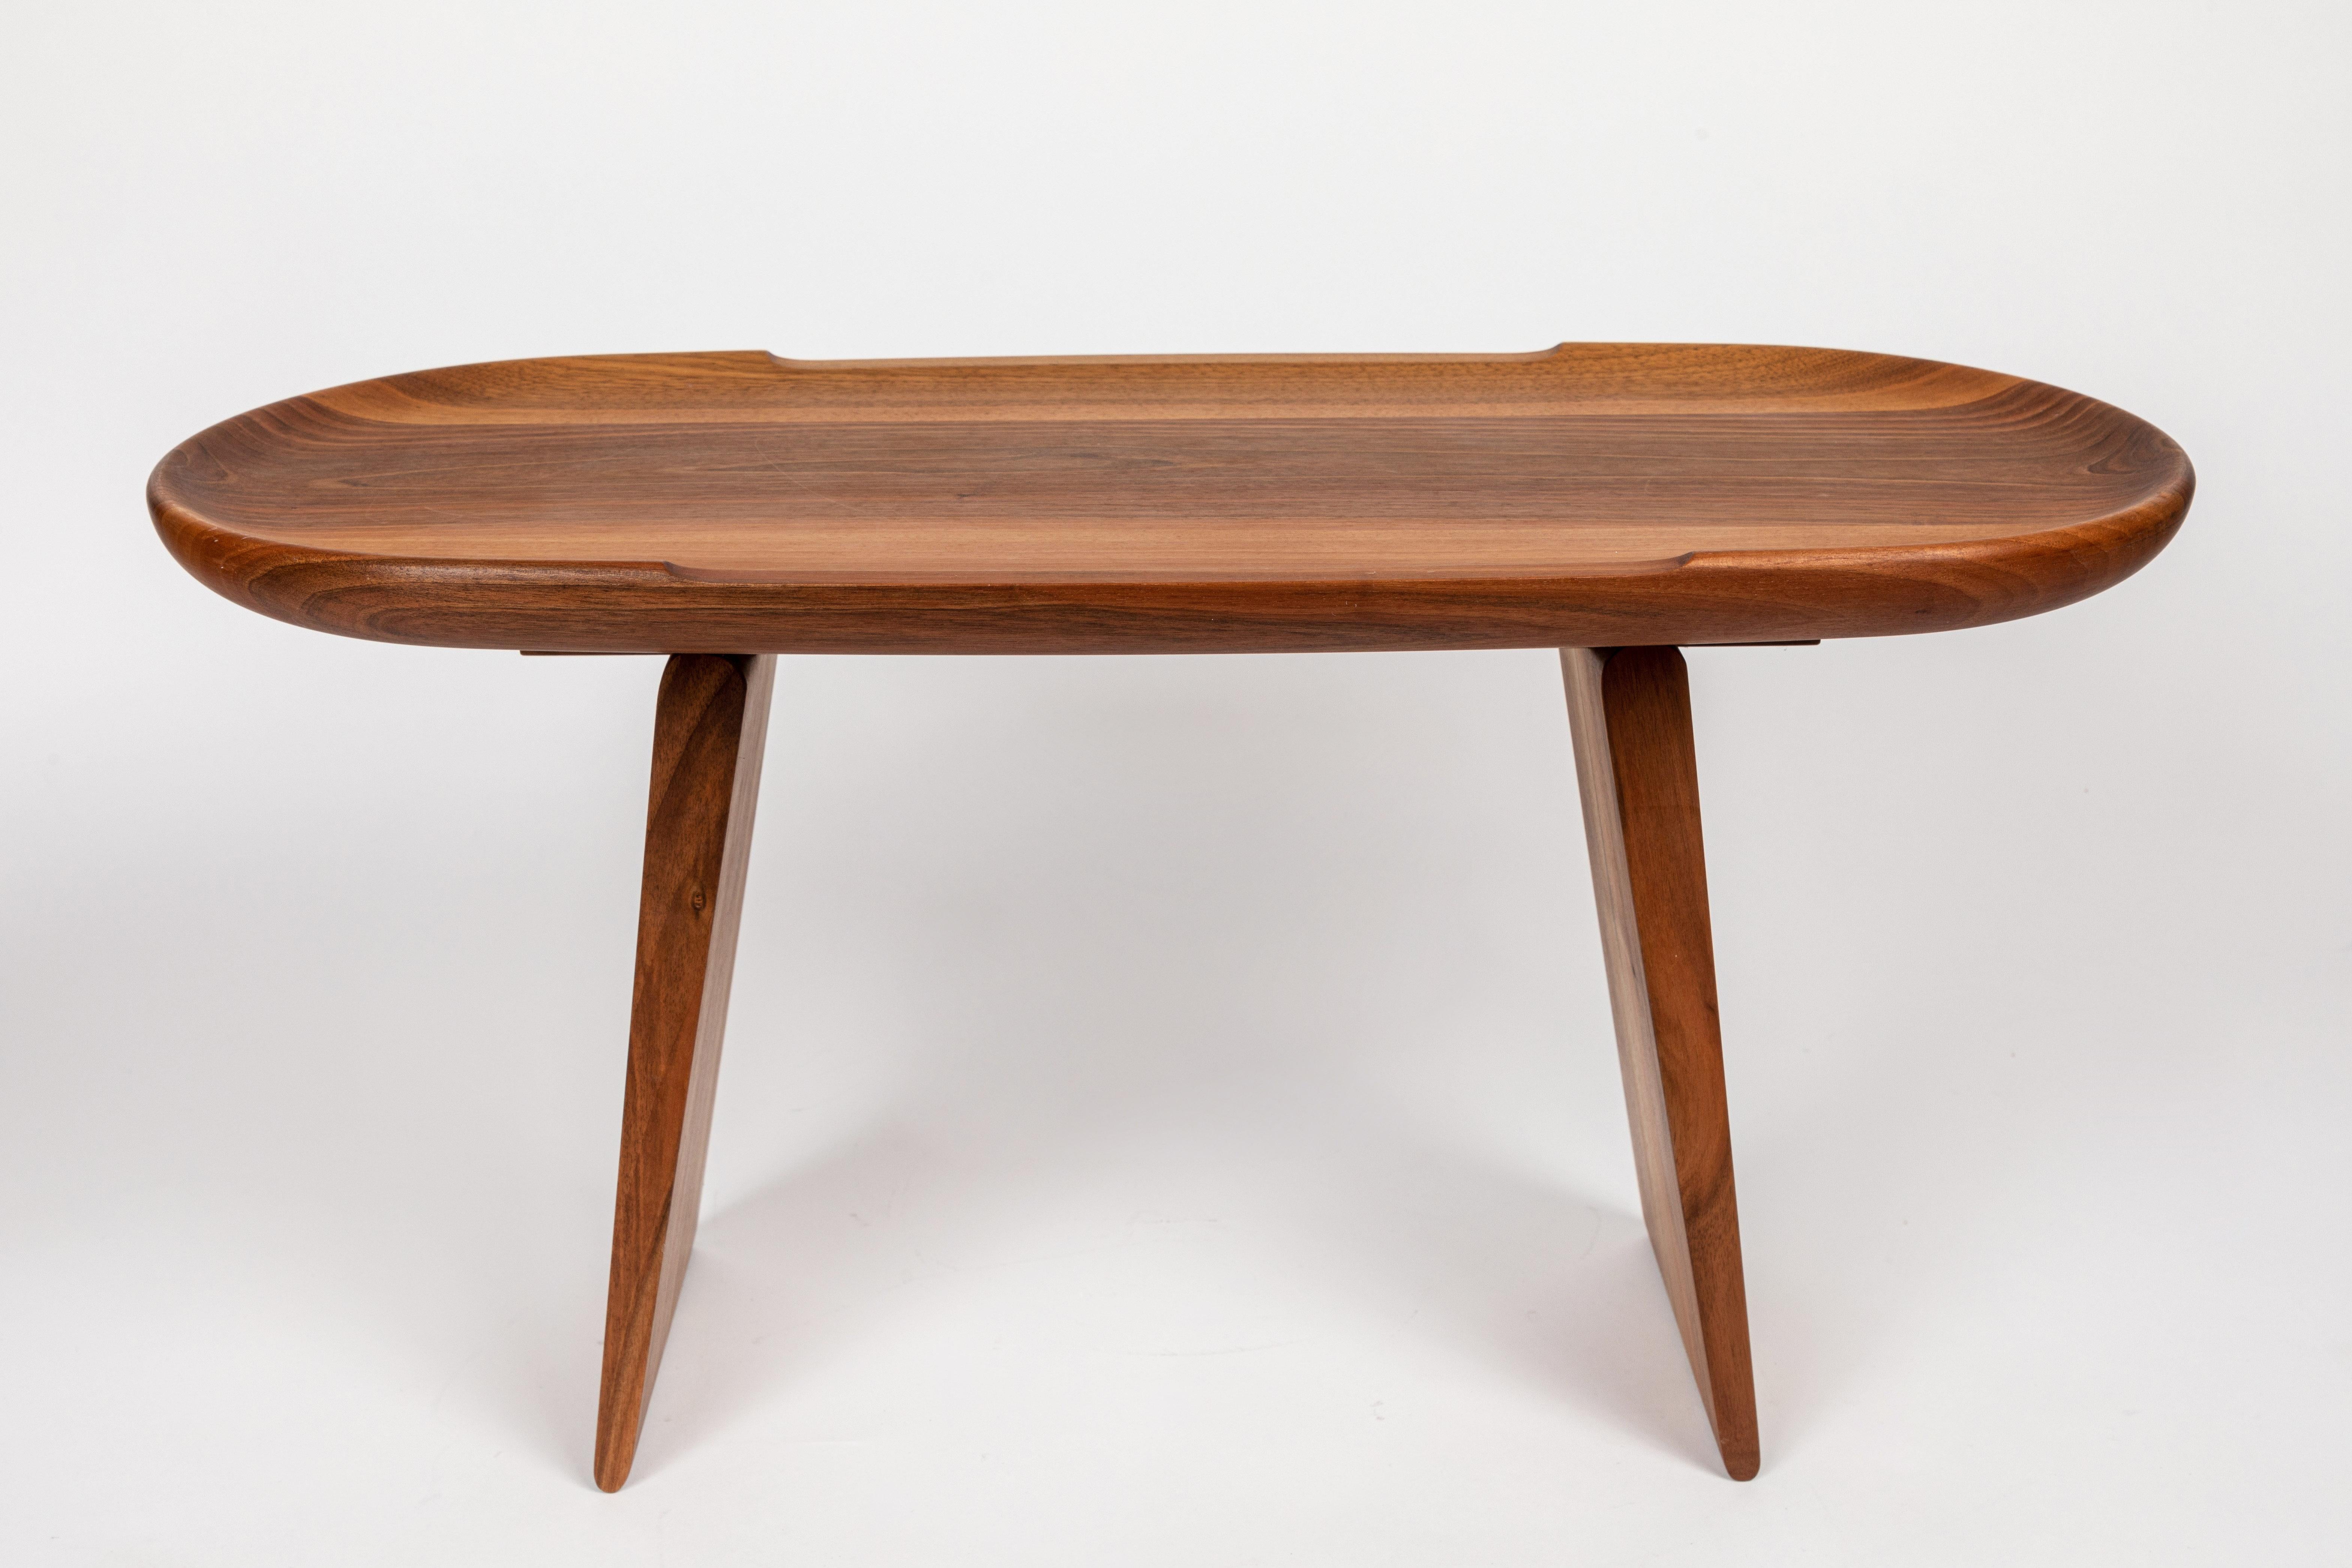 Carl Auböck Modèle #3511 table en noyer. Conçue dans les années 1950, cette table incroyablement raffinée et sculpturale est exécutée en noyer magnifiquement grainé. Il rappelle les designs modernes et organiques de George Nakashima, Pierre Chapo et